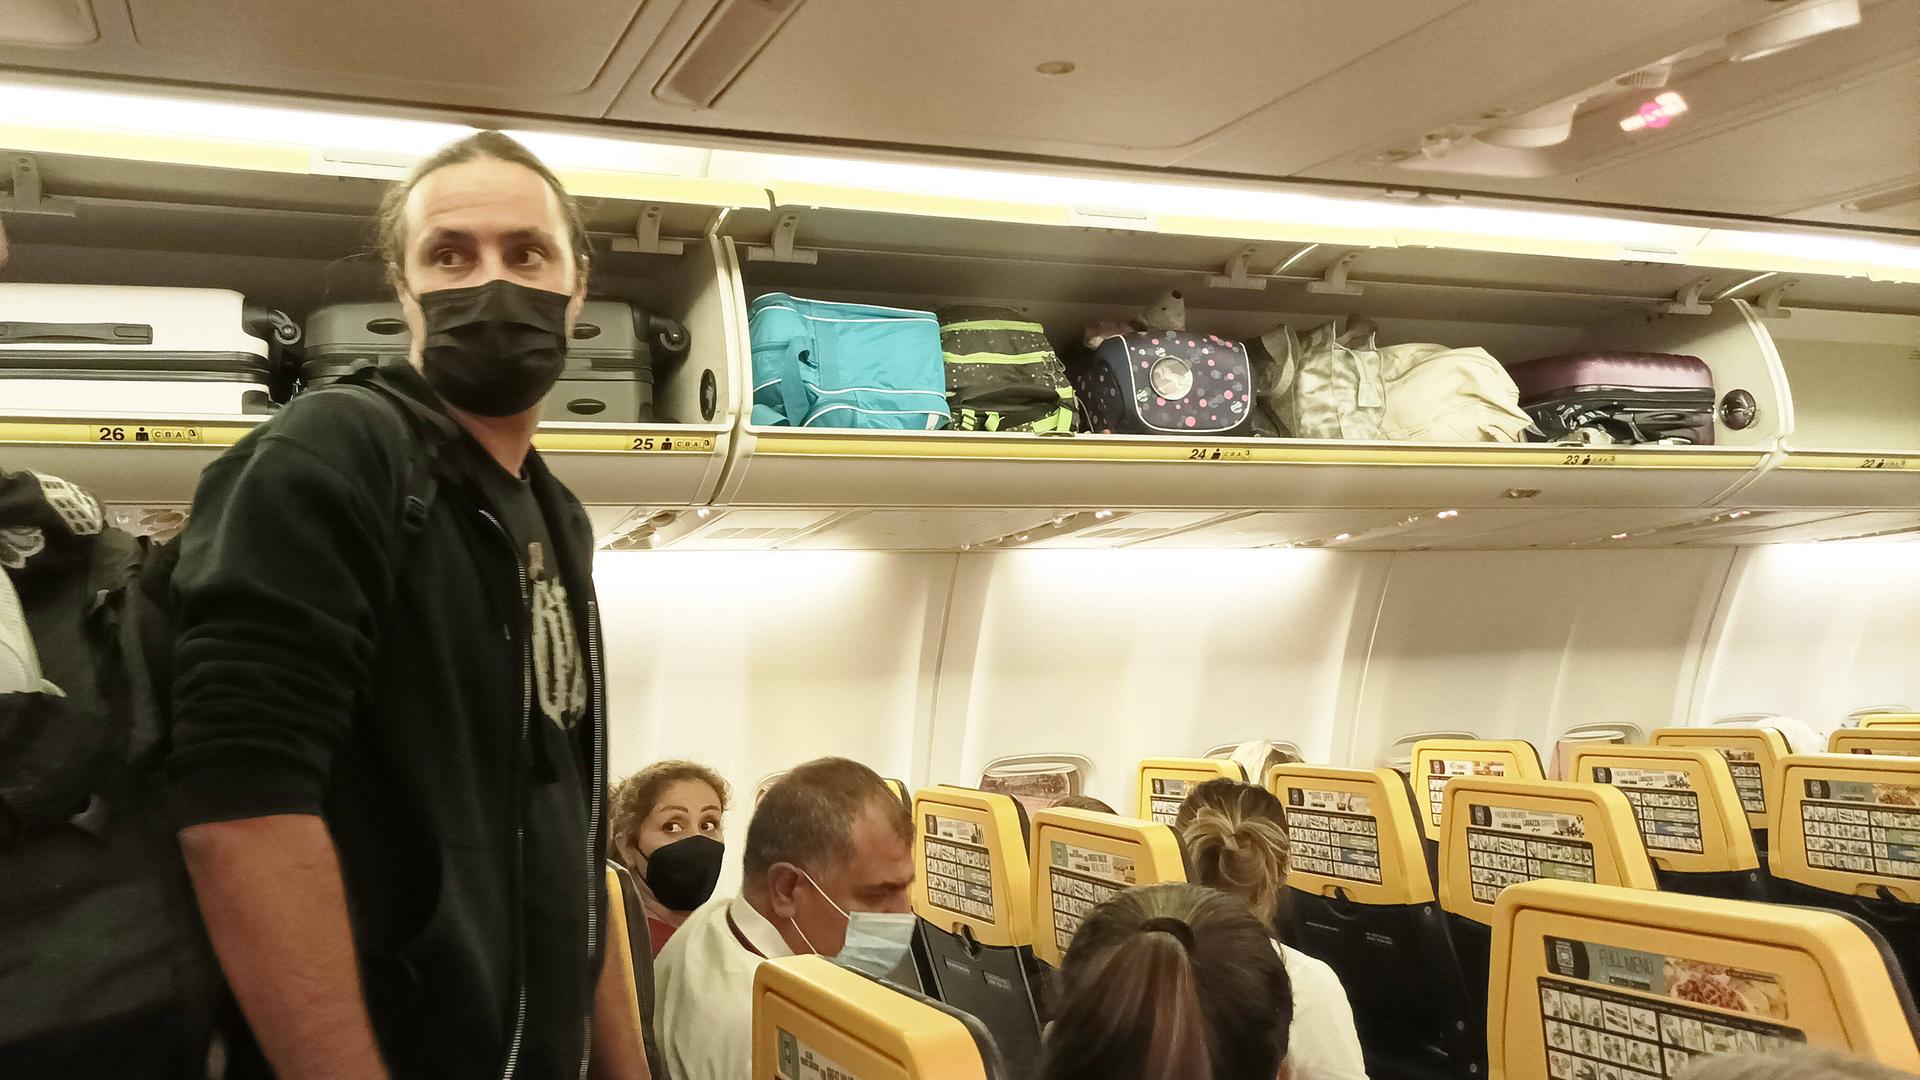 Reisende mit Masken in einem Flugzeug. Die Maskenpflicht soll künftig wegfallen